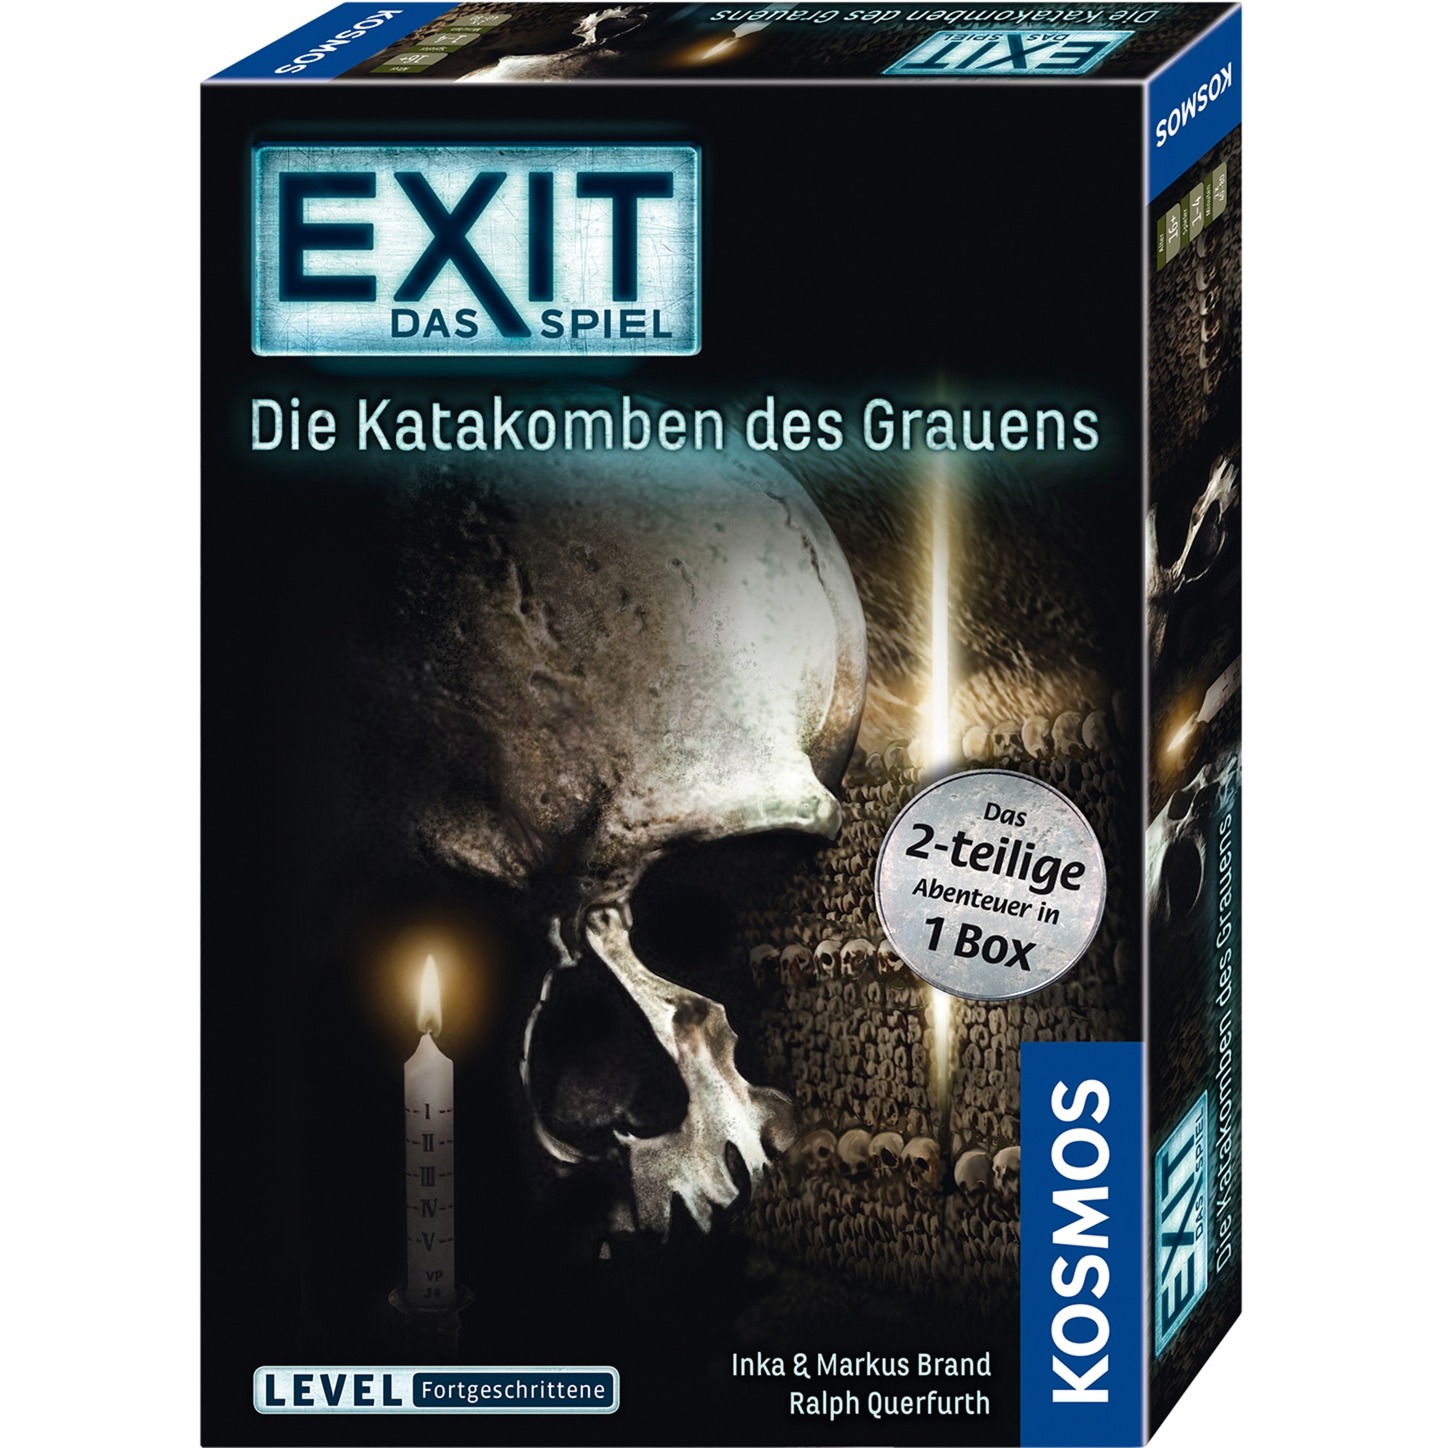 Image of Alternate - EXIT - Das Spiel - Die Katakomben des Grauens, Partyspiel online einkaufen bei Alternate